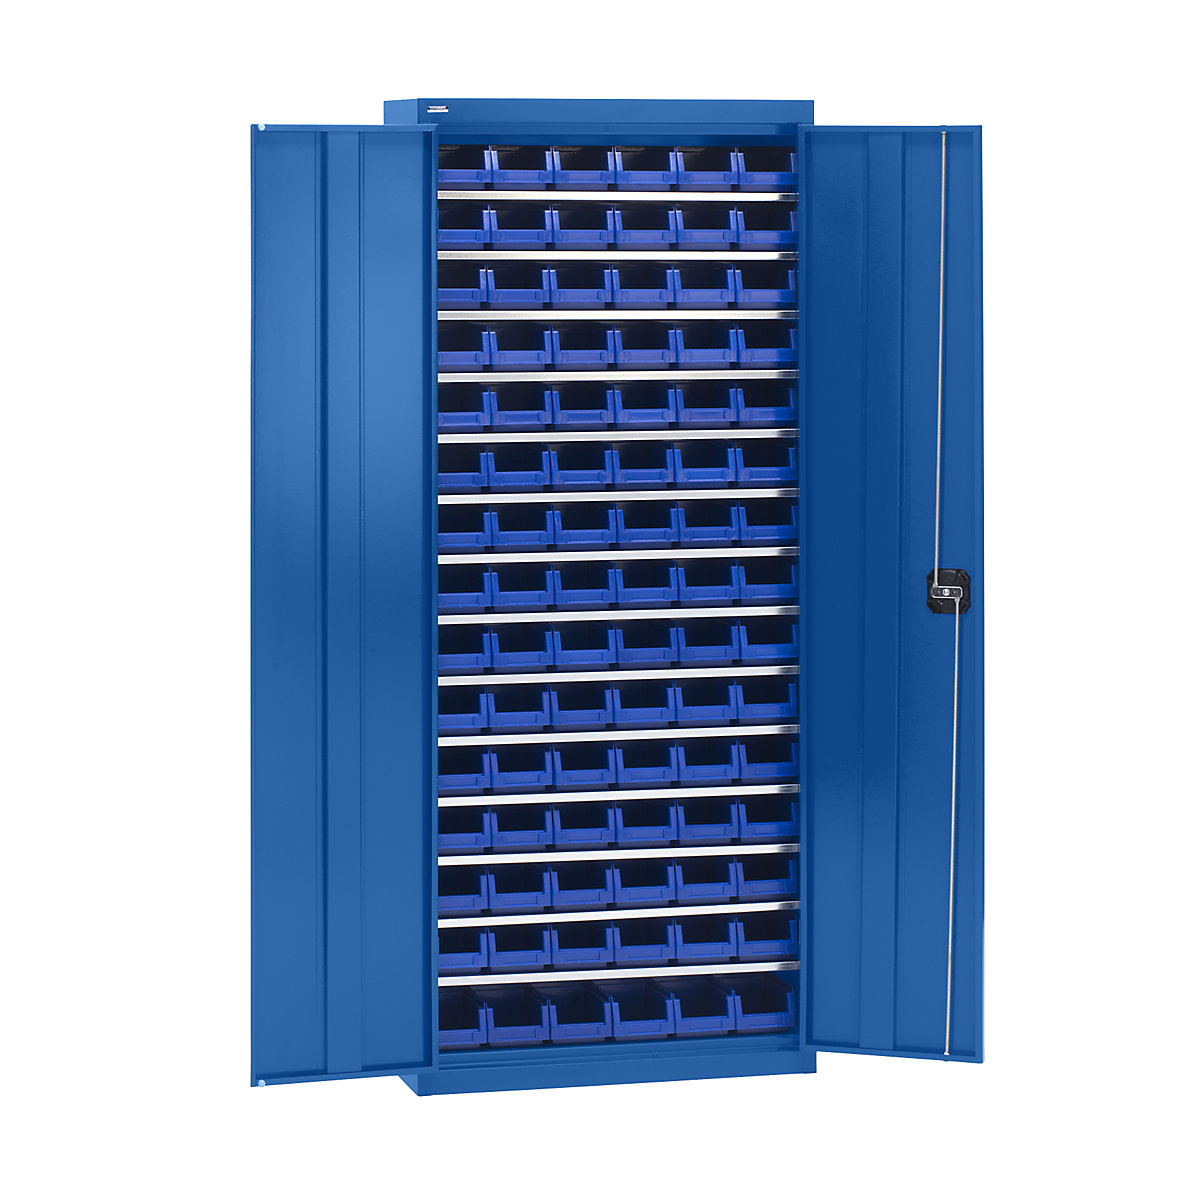 Materiaalkast met magazijnbakken – eurokraft pro, hoogte 1575 mm, 14 legborden, gentiaanblauw-8